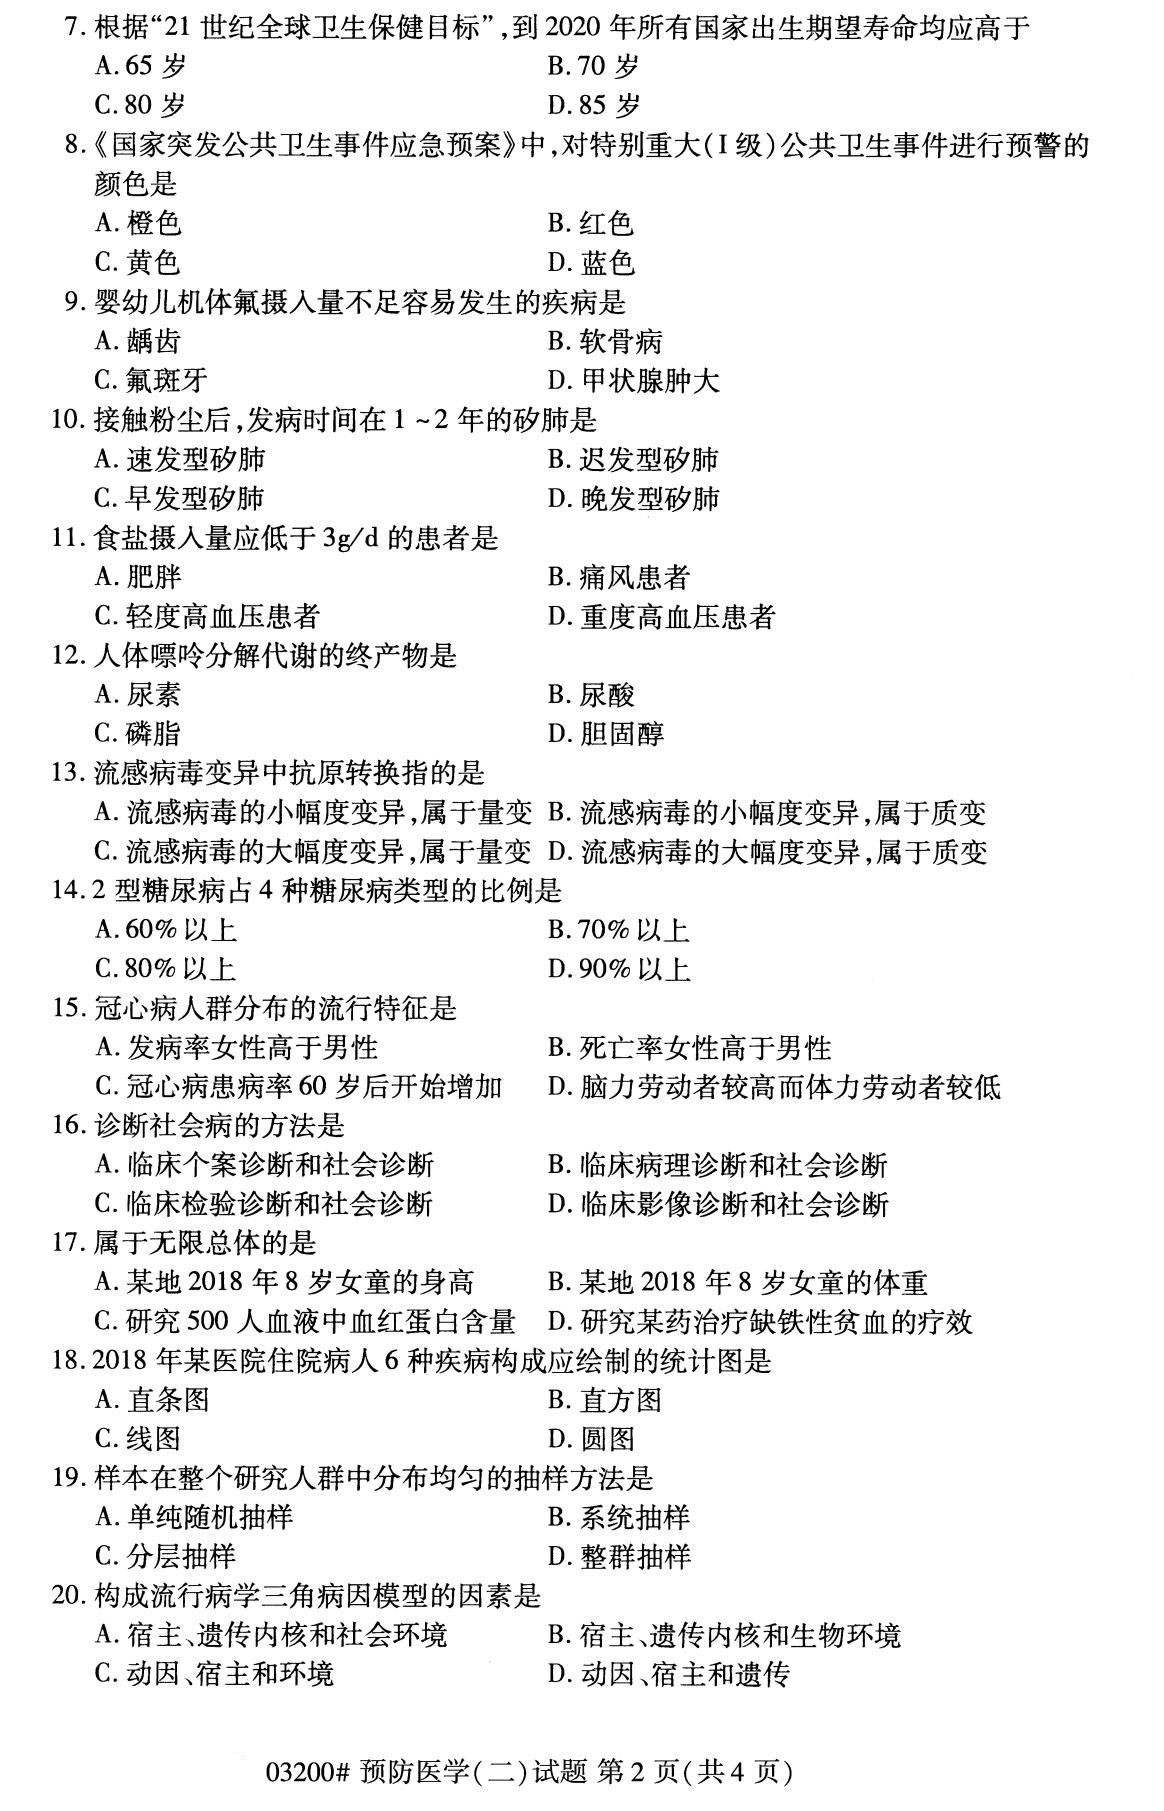 四川省2020年8月自学考试本科03200预防医学(二)(图2)